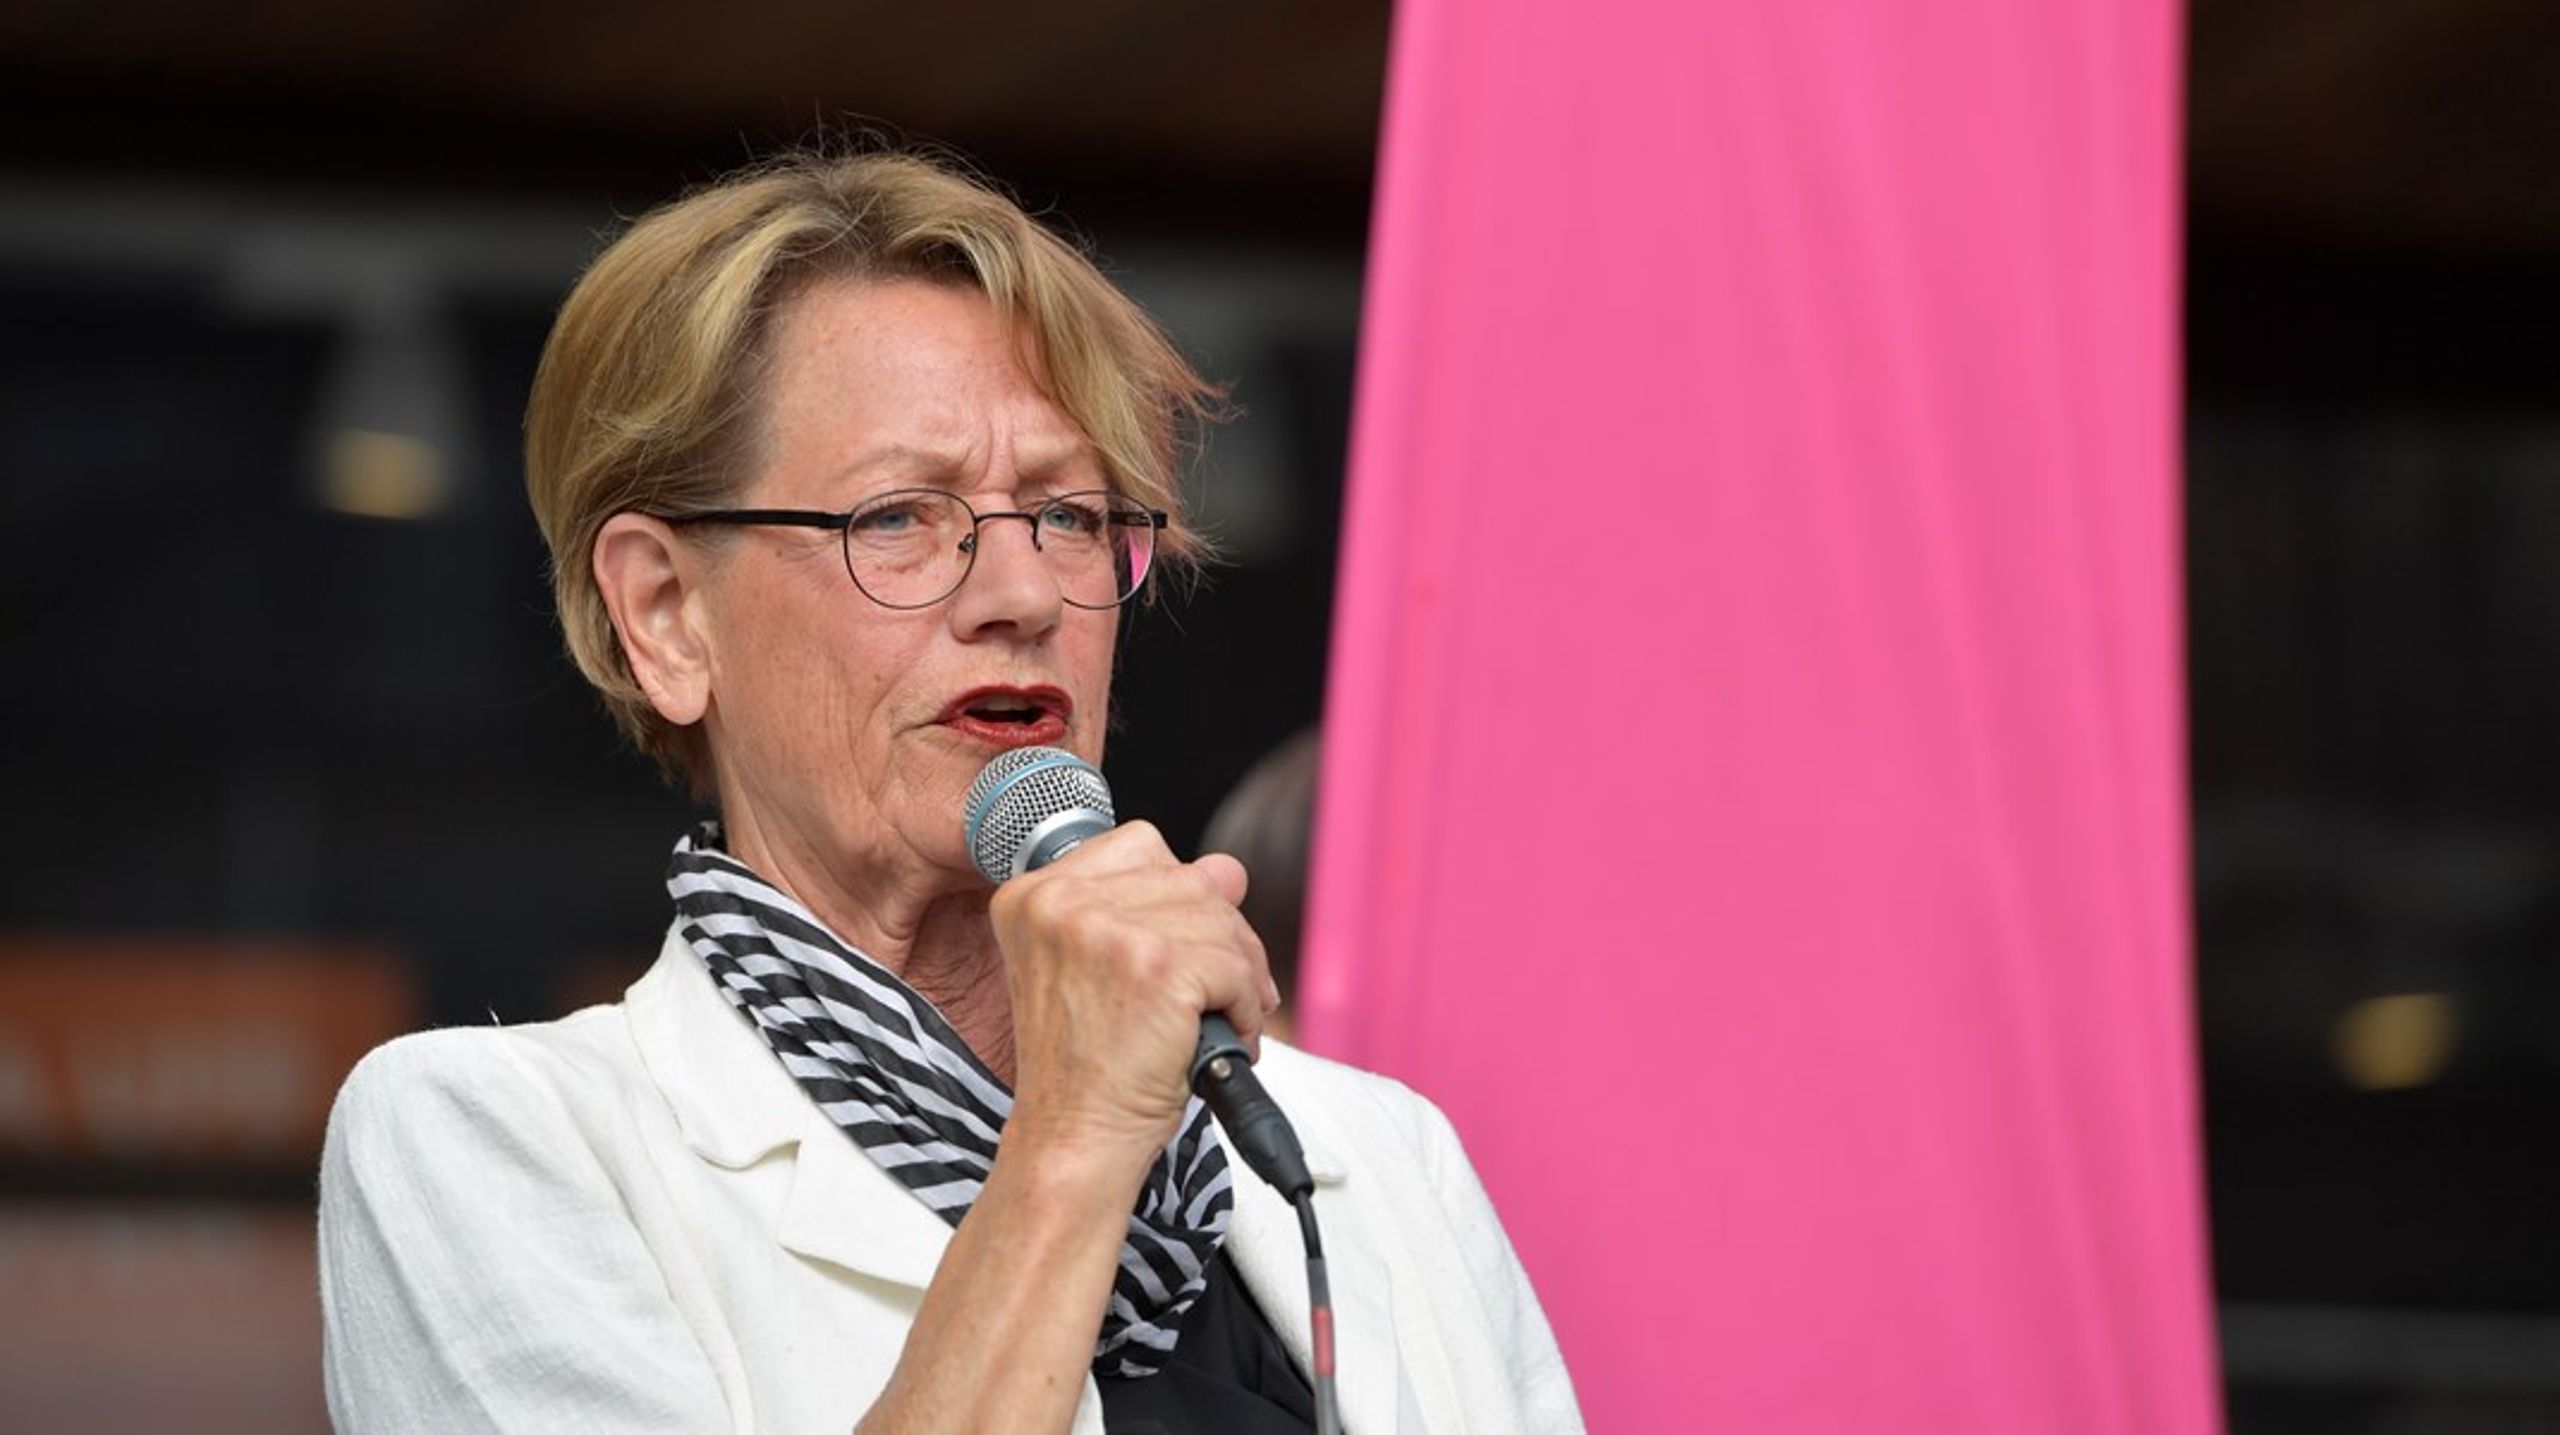 Gudrun Schymans engagemang i organisationen Klimatalliansen kan leda till att hon petas ur Feministiskt initiativ.